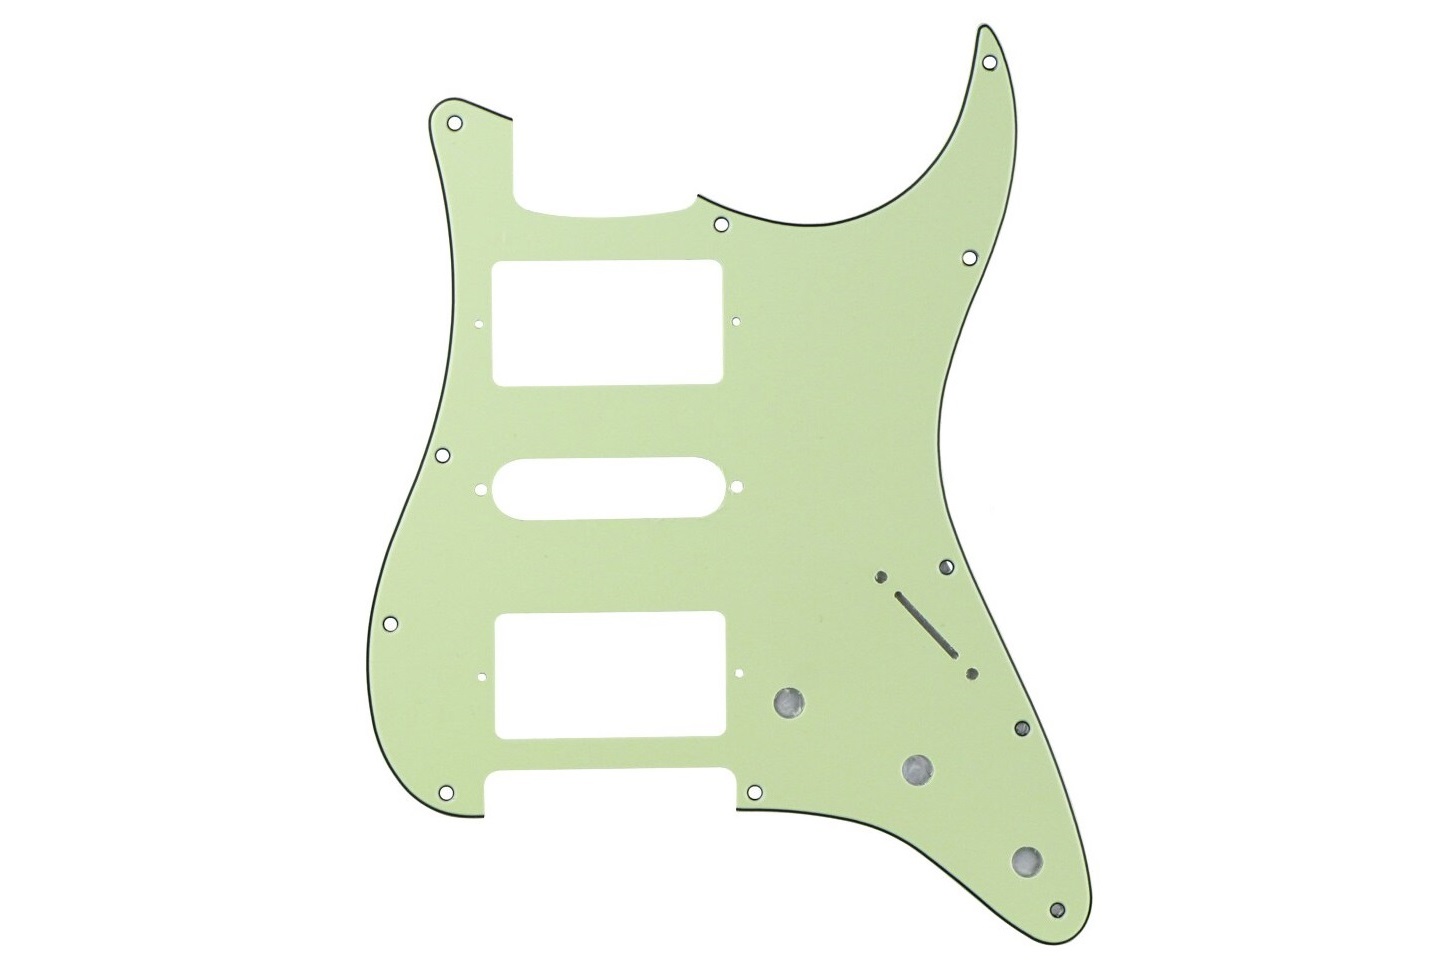 KAISH Mint Green 3 Ply LP Guitar Pickguard Scratch Plate for Epi Les Paul